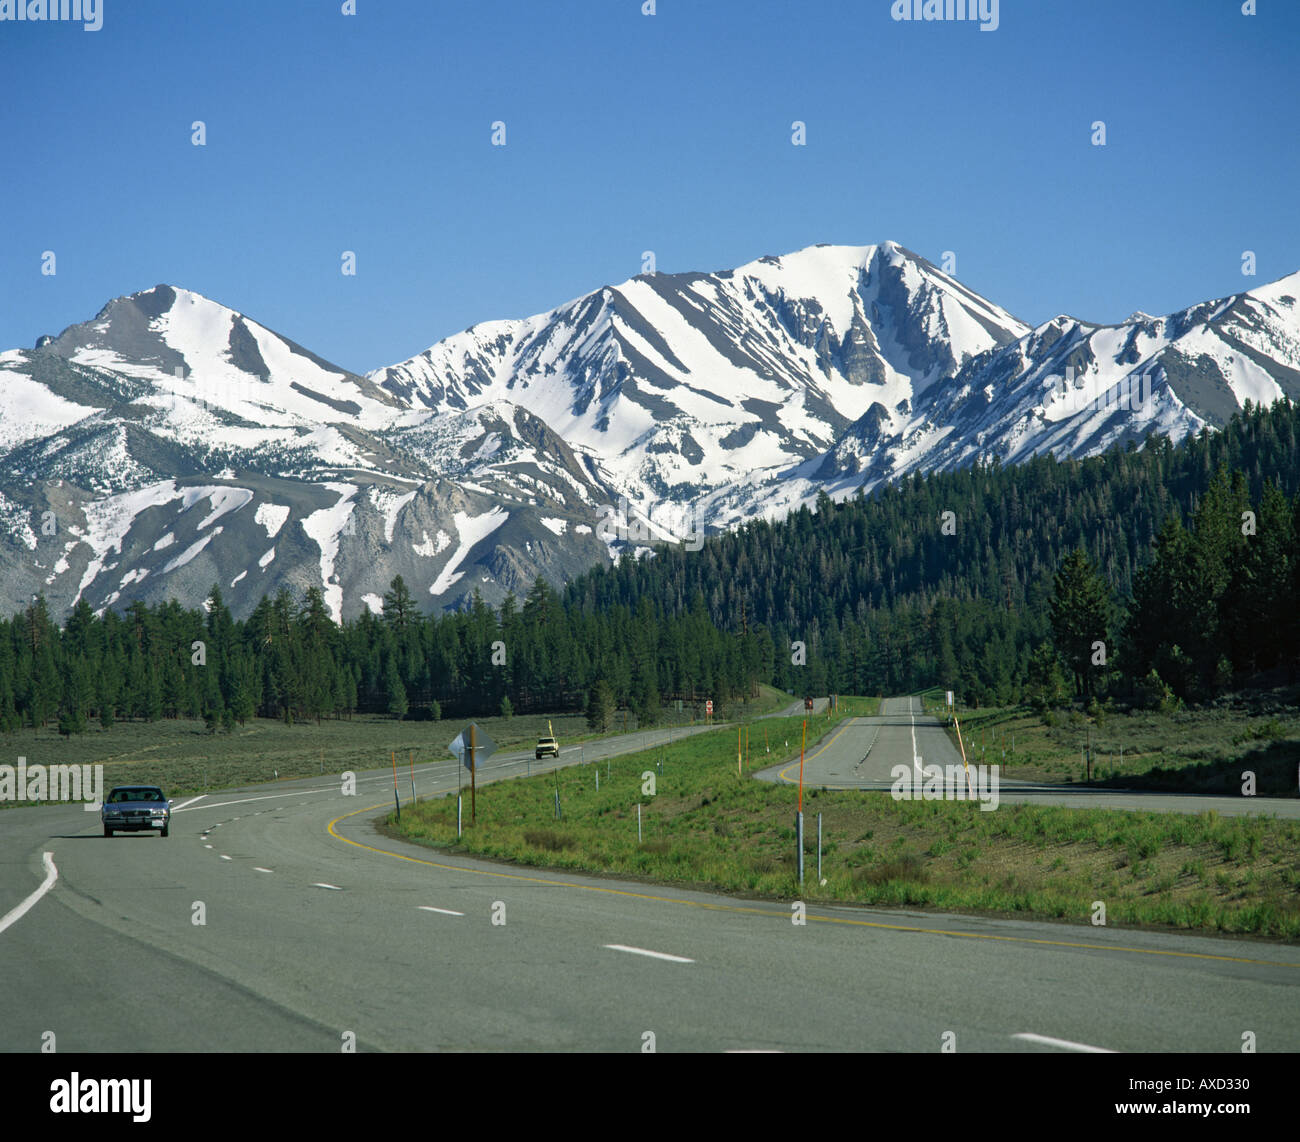 El automovilismo en la Highway 395 en frente a los picos nevados de las montañas de la Sierra Nevada cerca de Mammoth Lakes, California U S A Foto de stock